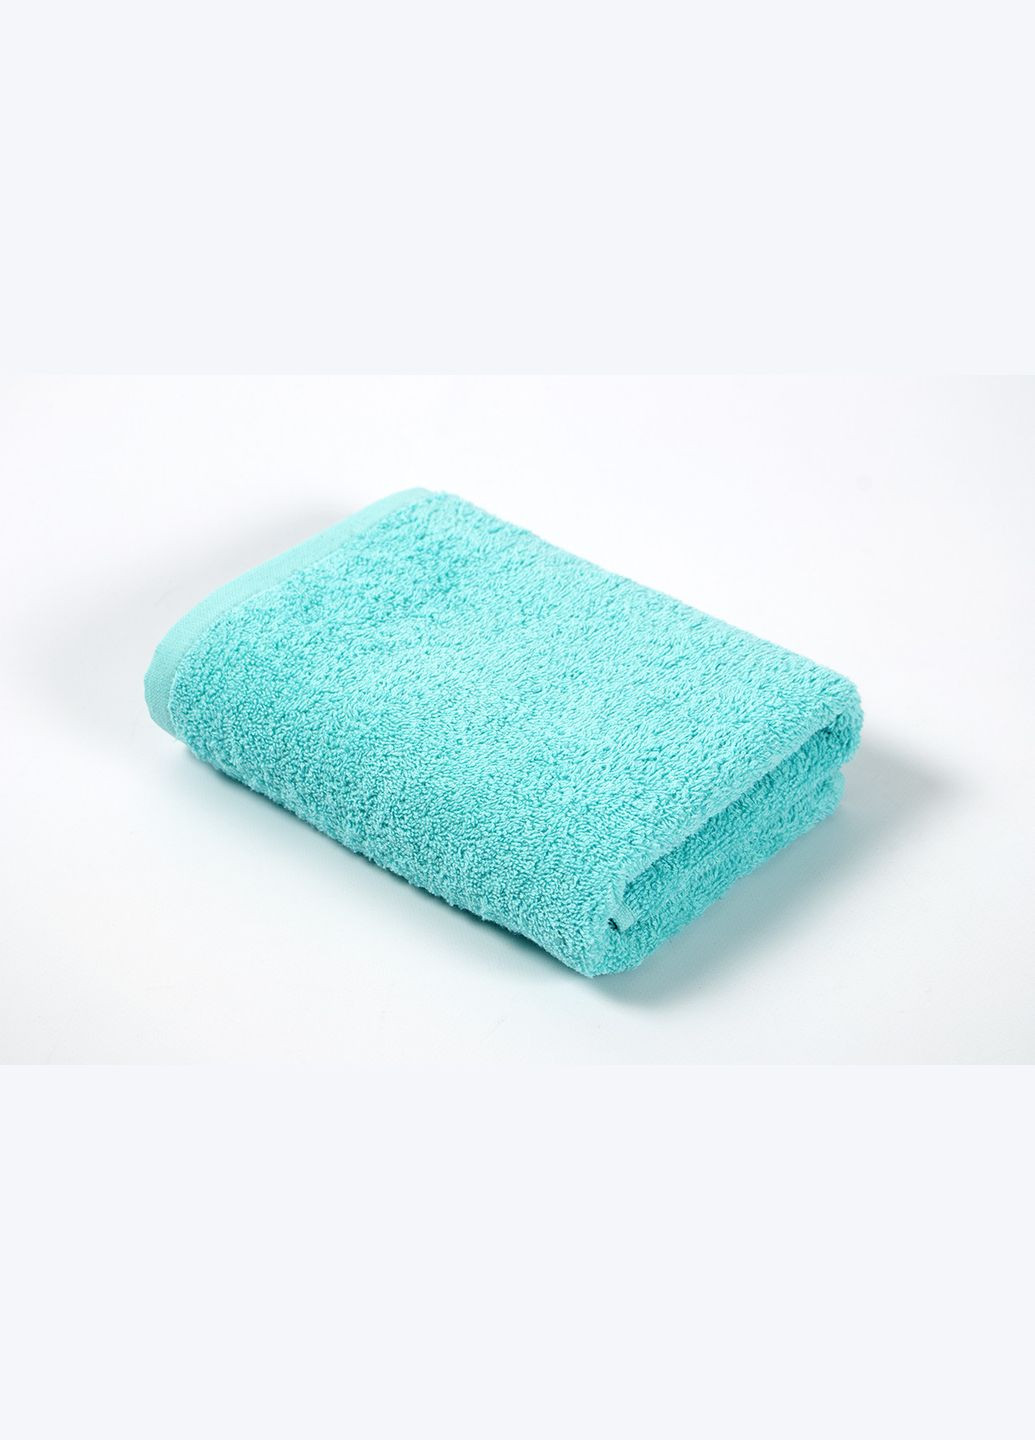 Iris Home полотенце отель aruba blue 40*70 440 г/м2 светло-бирюзовый производство -